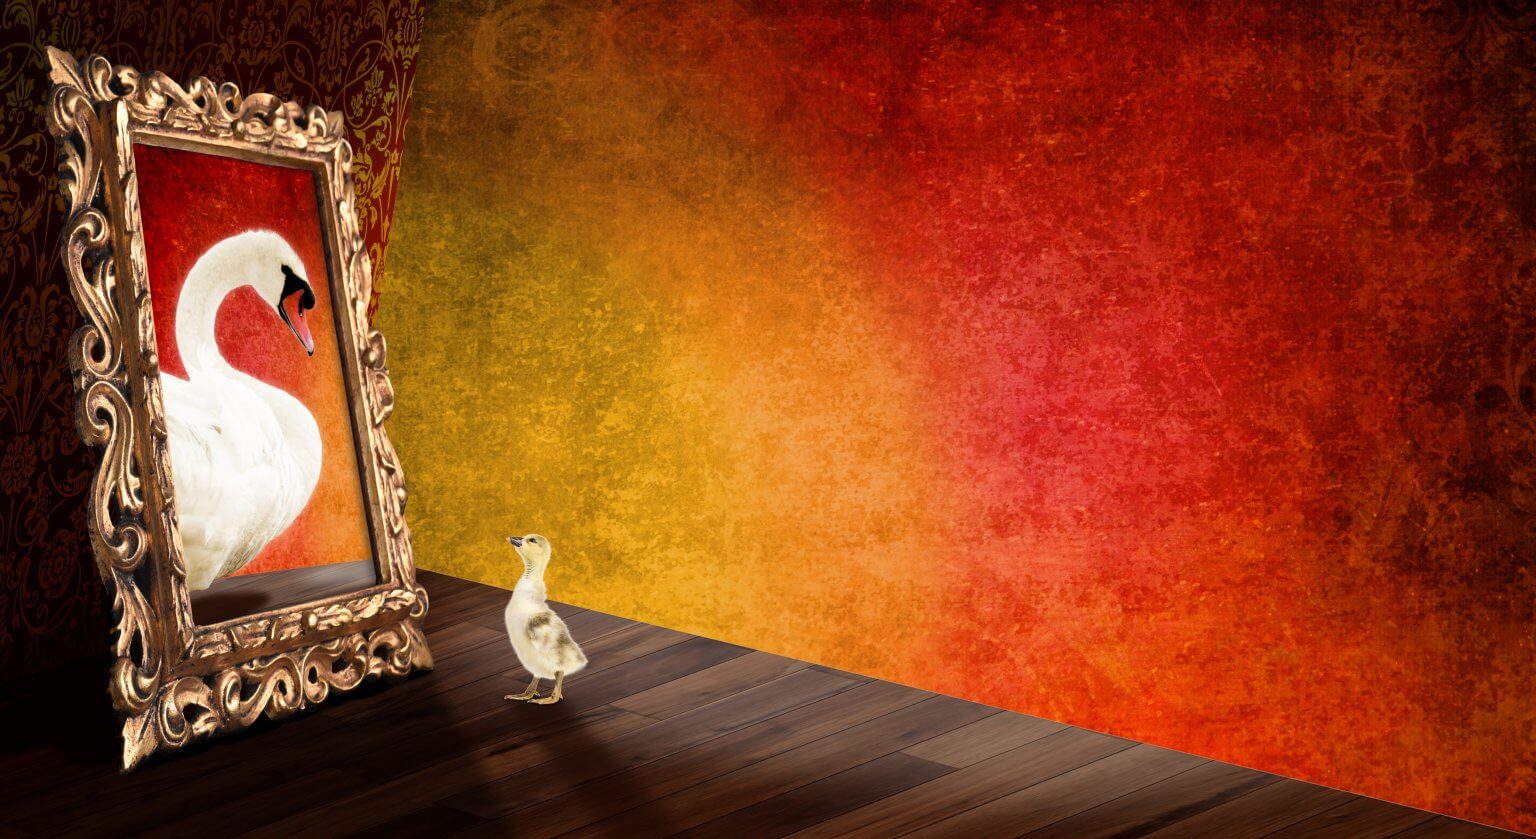 Kreative Bildbearbeitung Composing Artwork zeigt eine kleine Ente vor dem Bild mit einem Schwan.